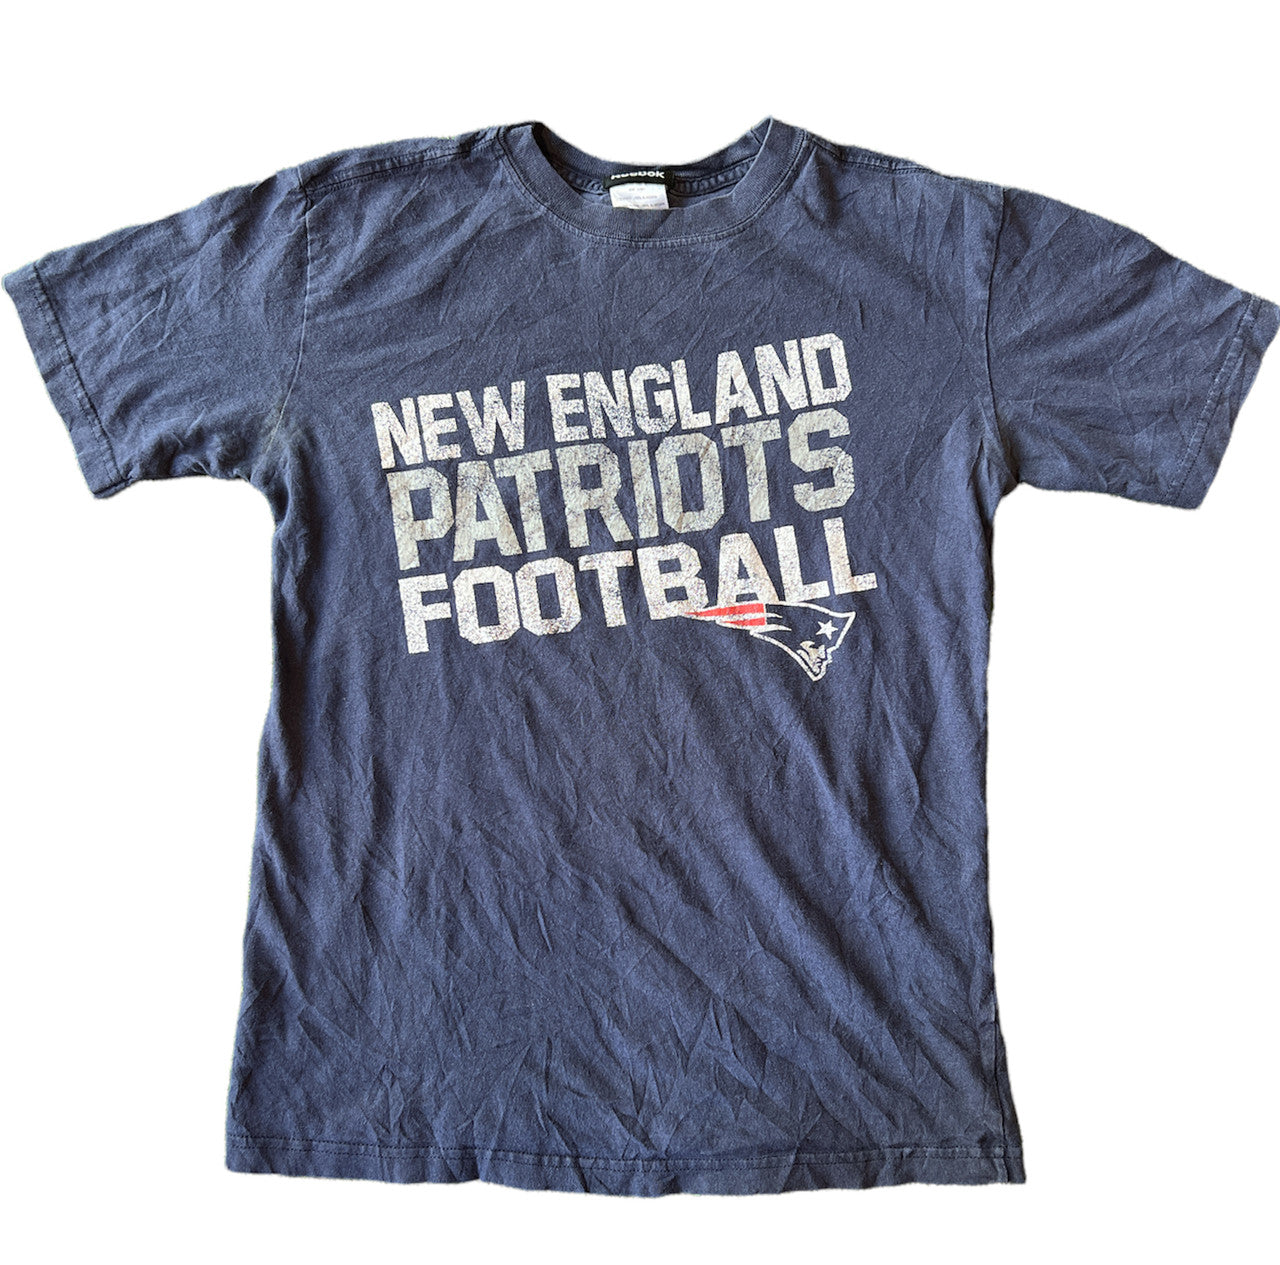 Reebok New England Patriots Tshirt